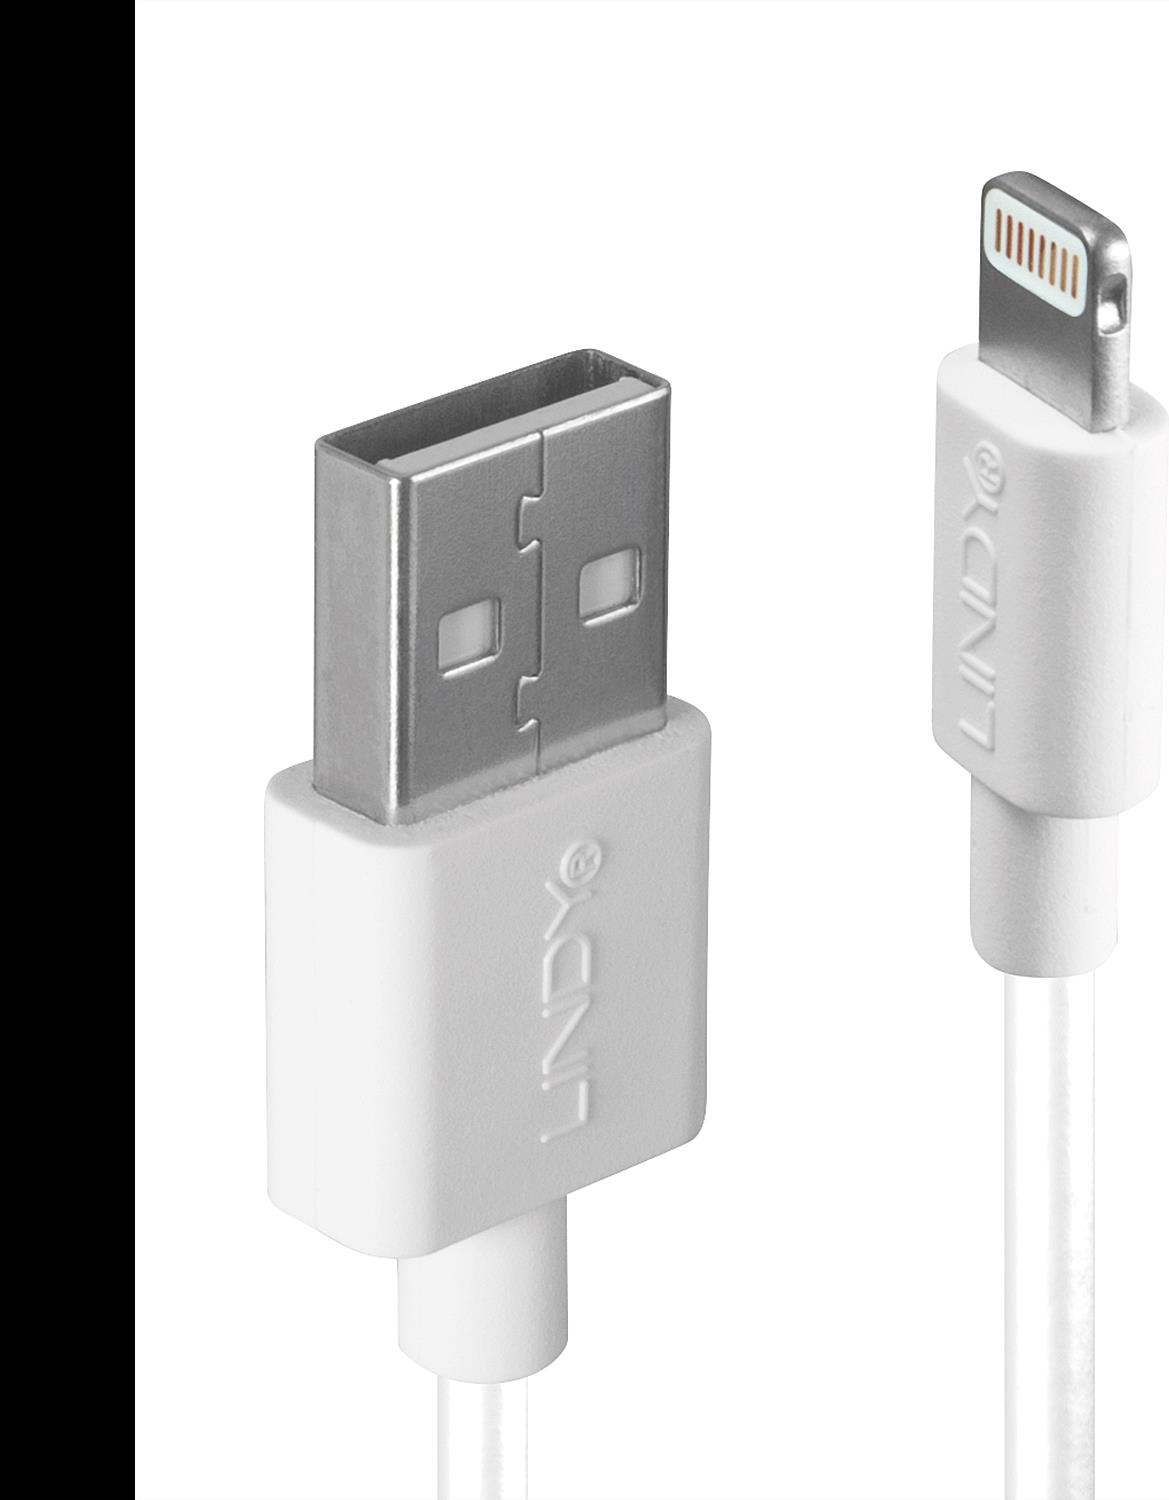 LINDY USB an Lightning Kabel, weiß 0.5m